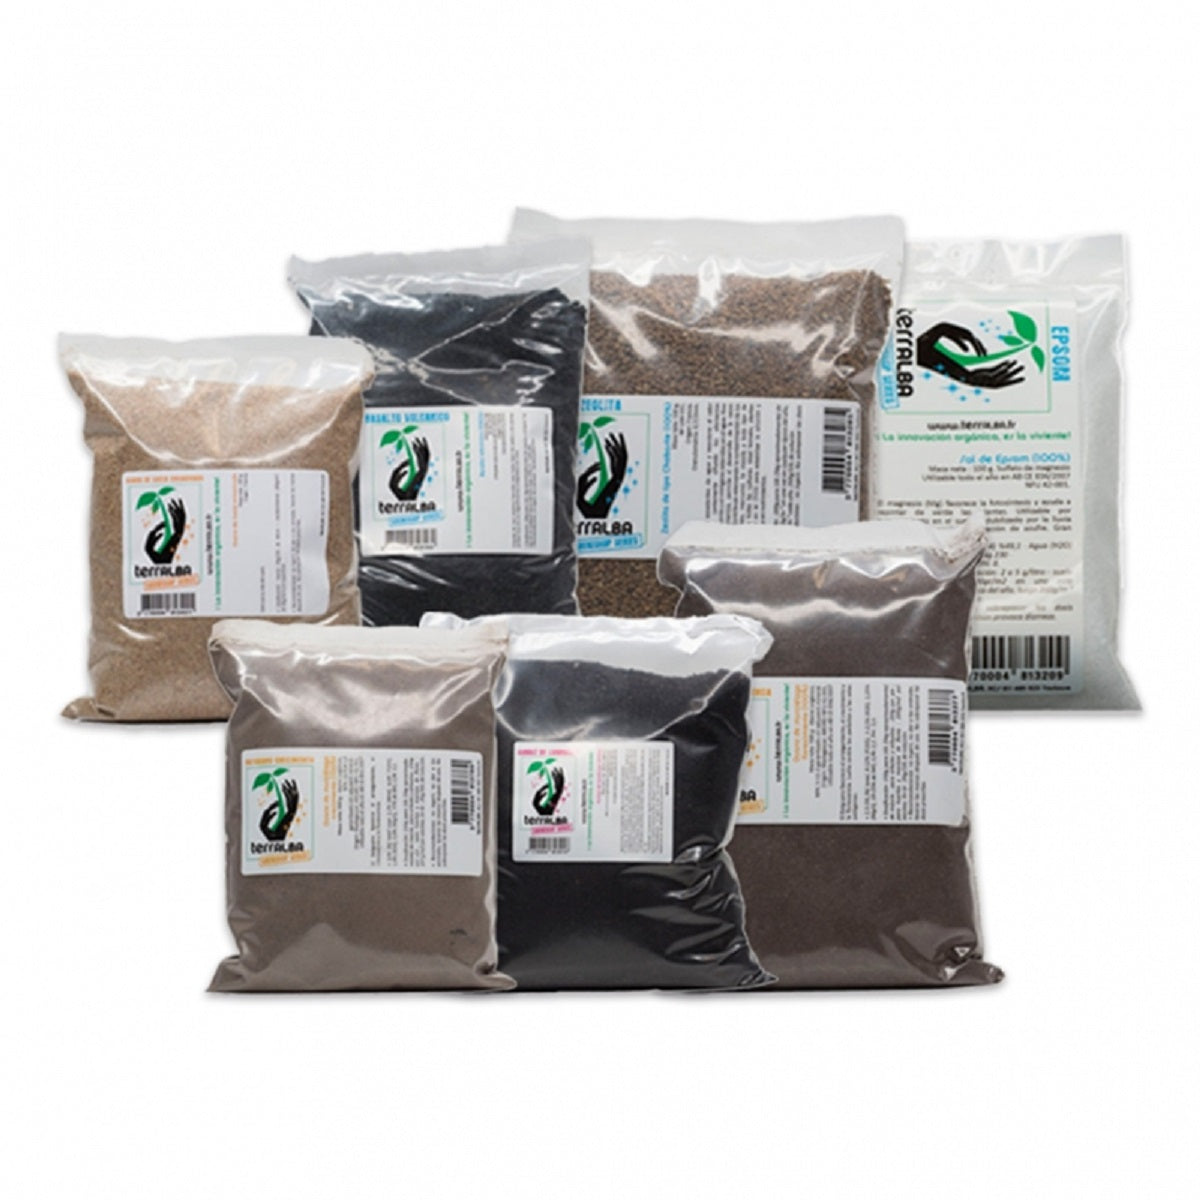 Pack d'engrais organique Terralba pour 100 litres de substrat